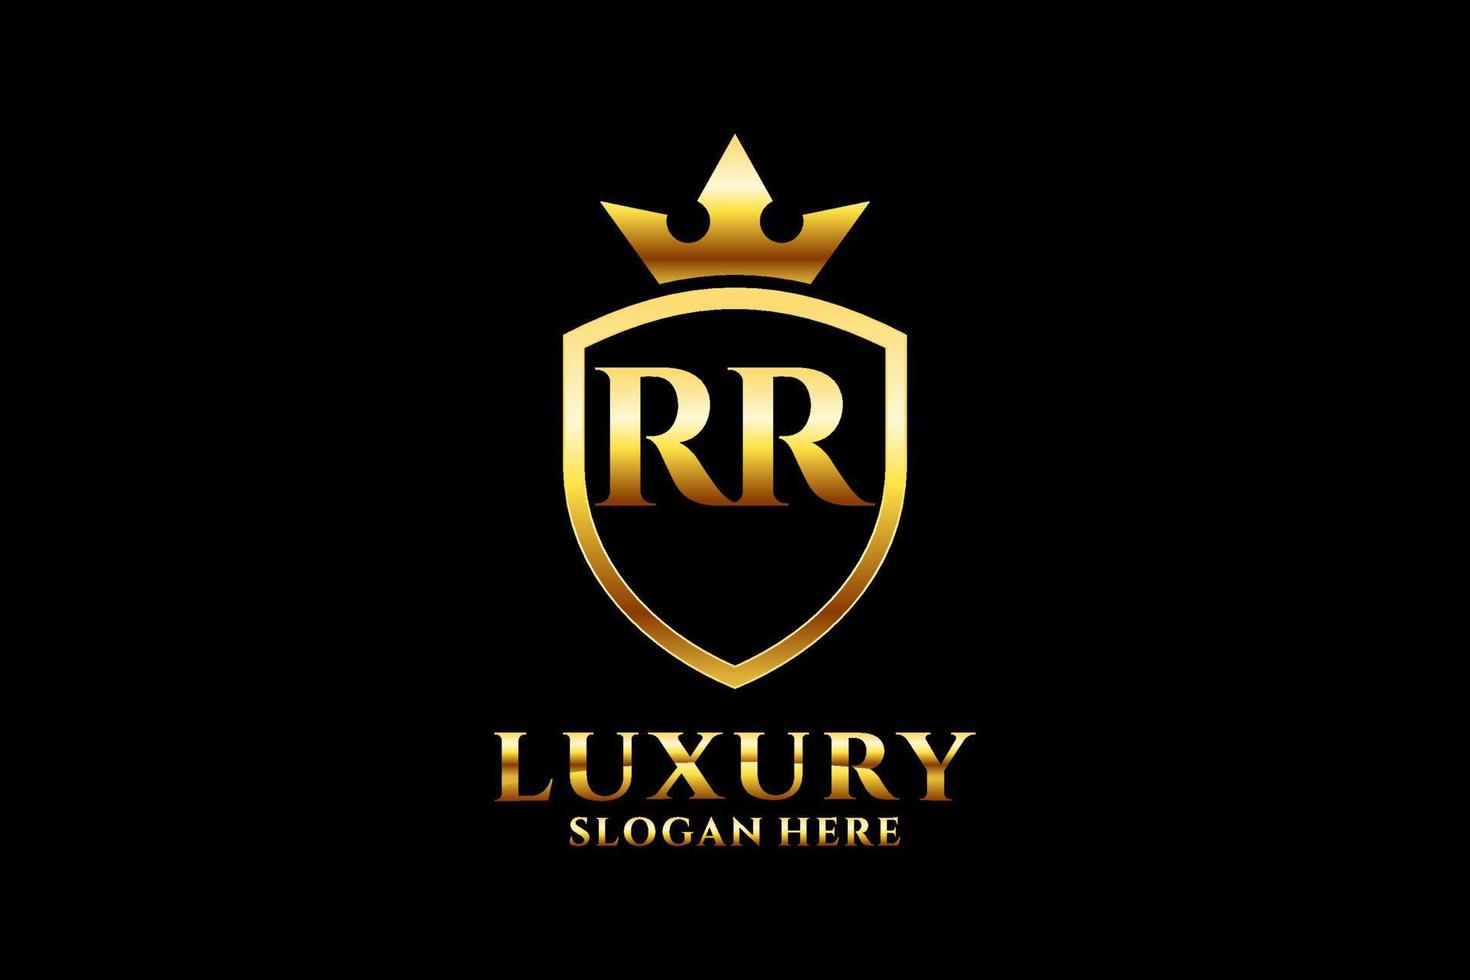 logo monogramme de luxe élégant initial rr ou modèle de badge avec volutes et couronne royale - parfait pour les projets de marque de luxe vecteur